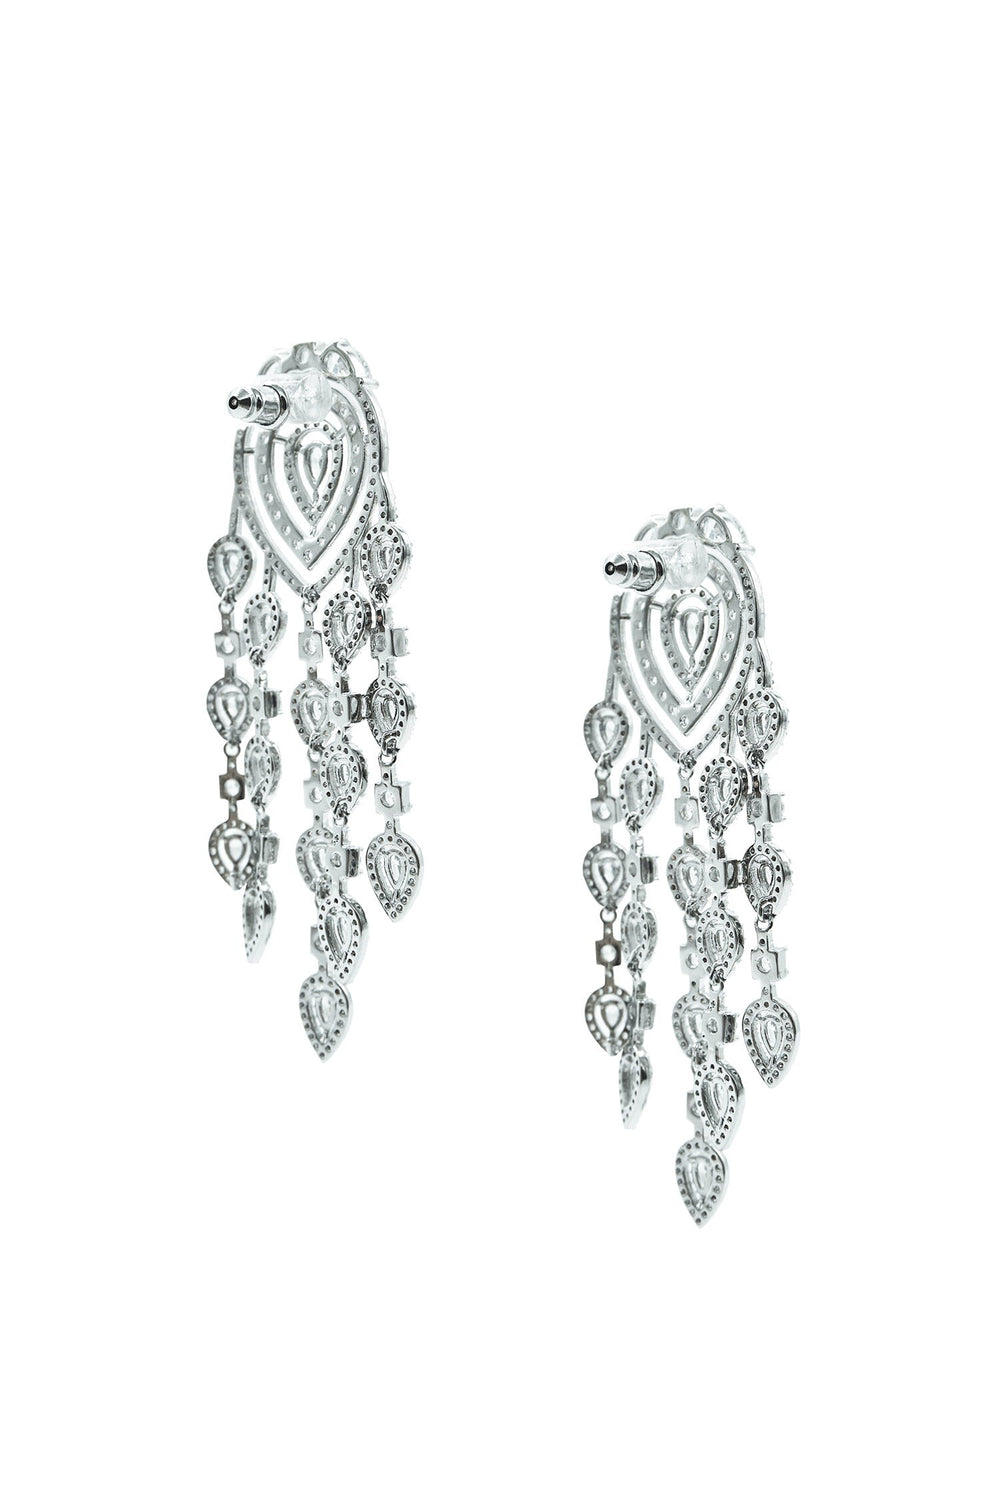 Milana Silver Chandelier Earrings